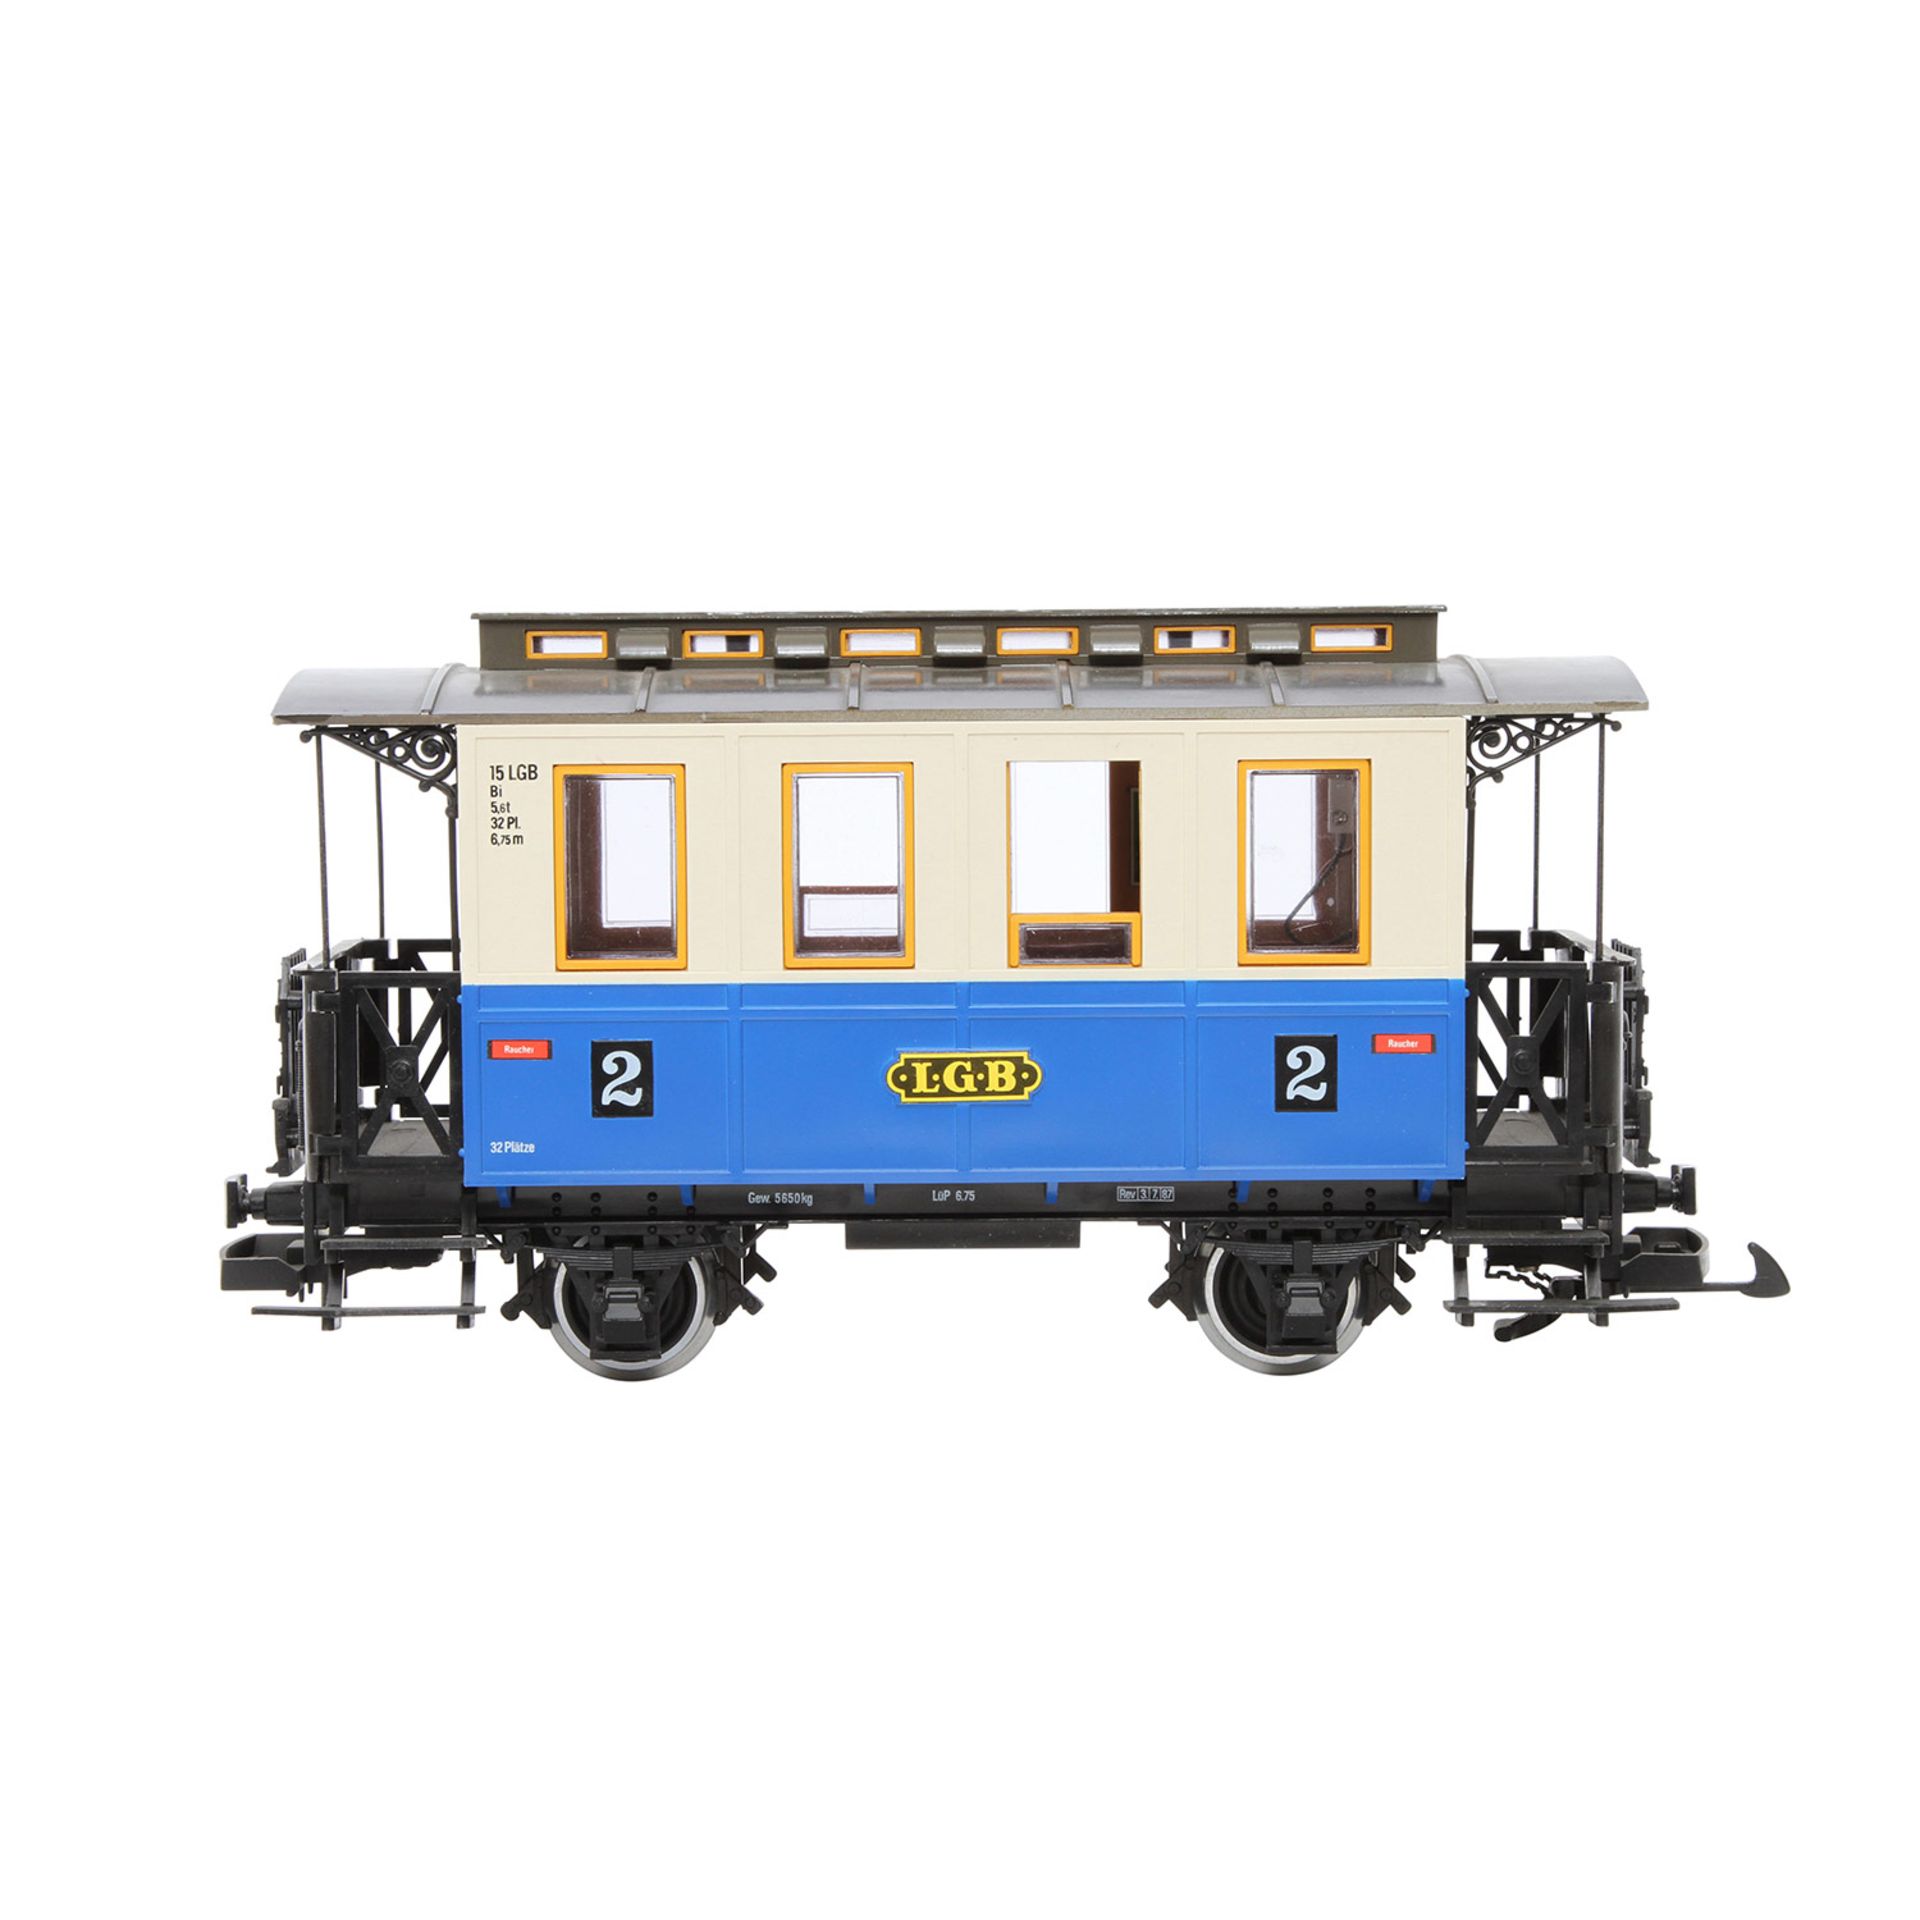 LGB Personenwagen 3015, Spur G, blau/beige, 2-achsig, 2.Kl., 2 Türen zum Öffnen, Oberlichtaufsatz, - Image 2 of 8